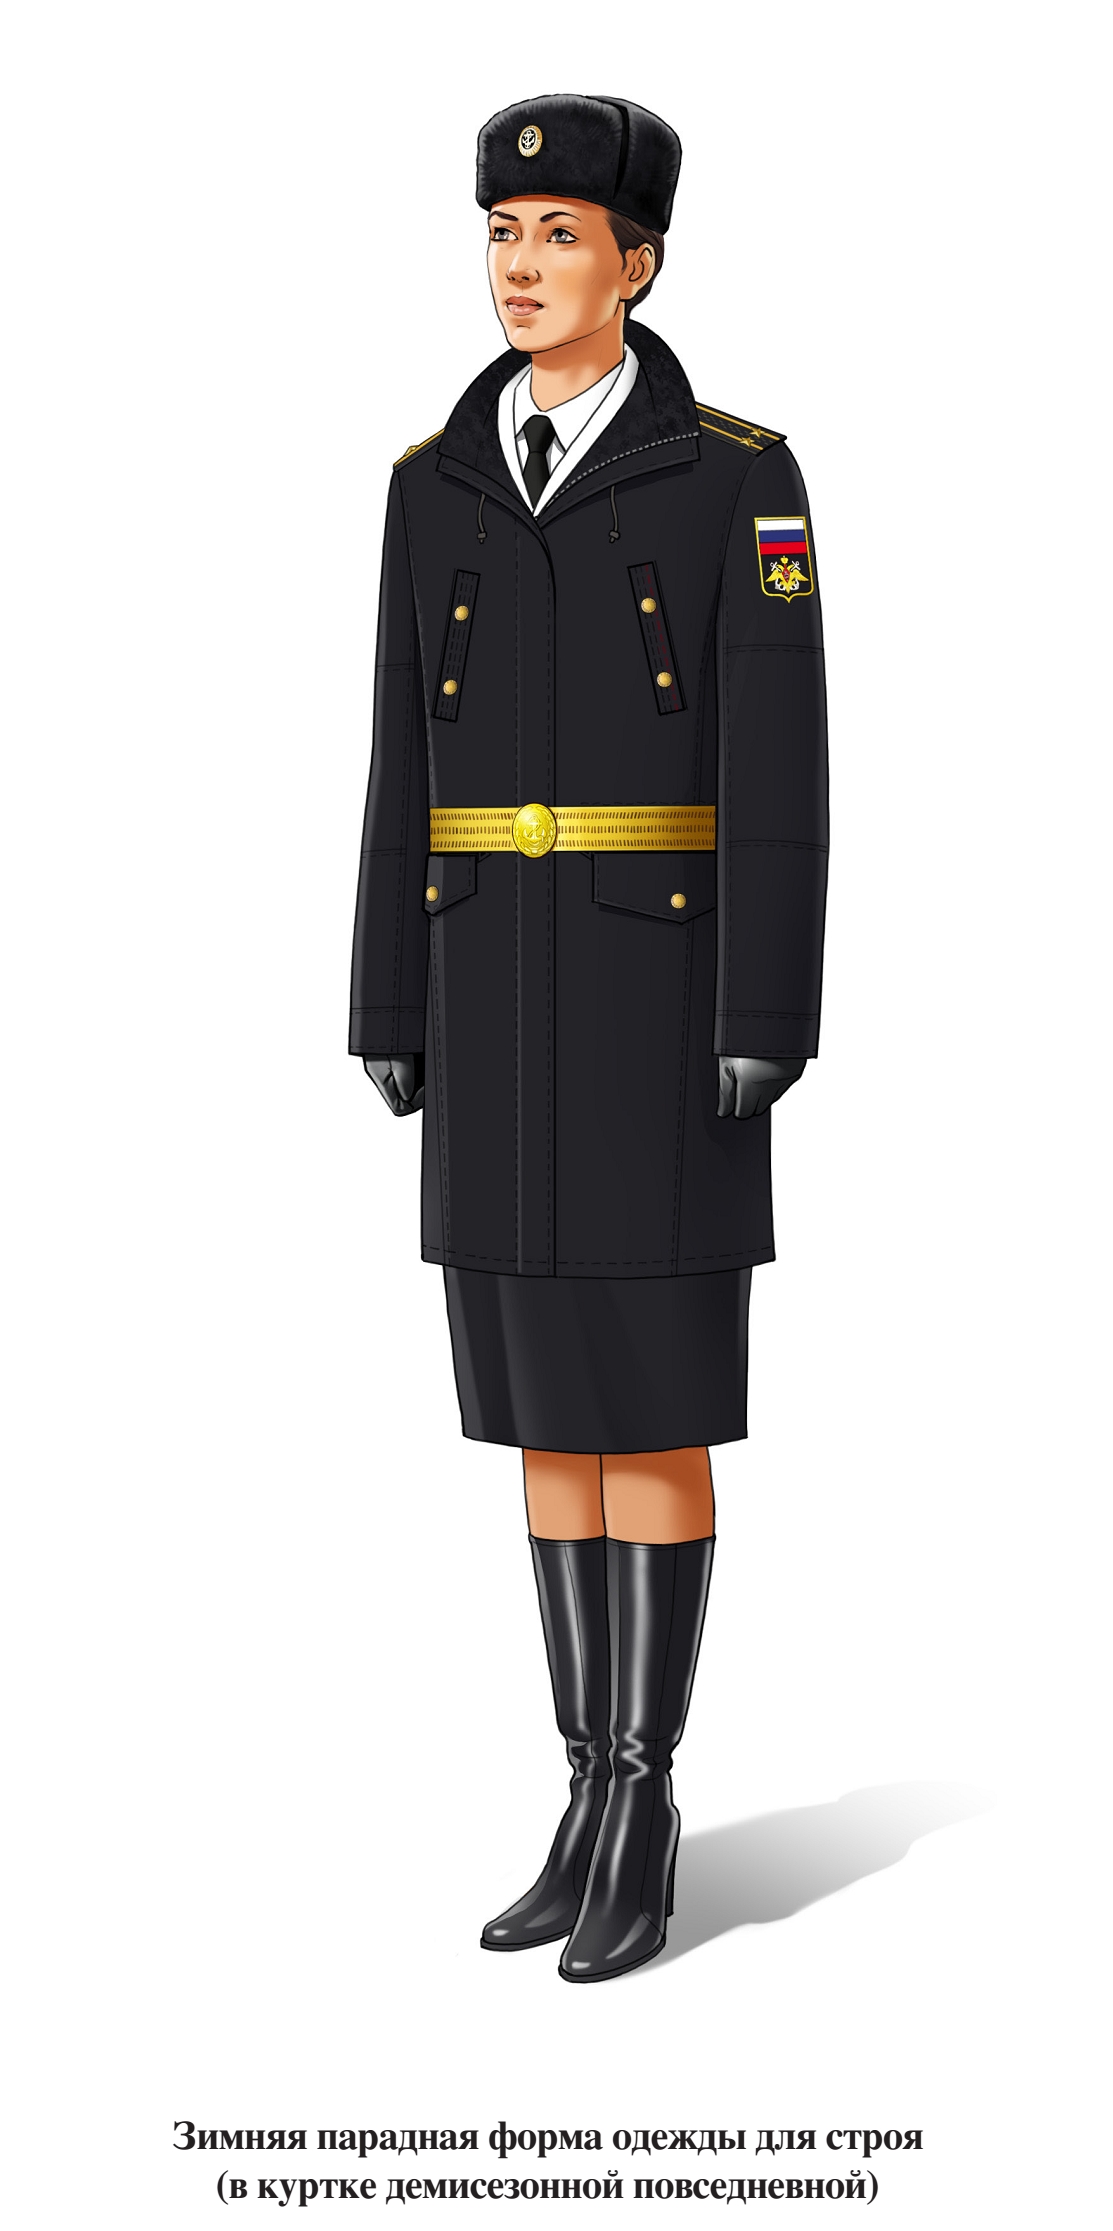 Зимняя парадная форма военнослужащих женского пола ВМФ для строя